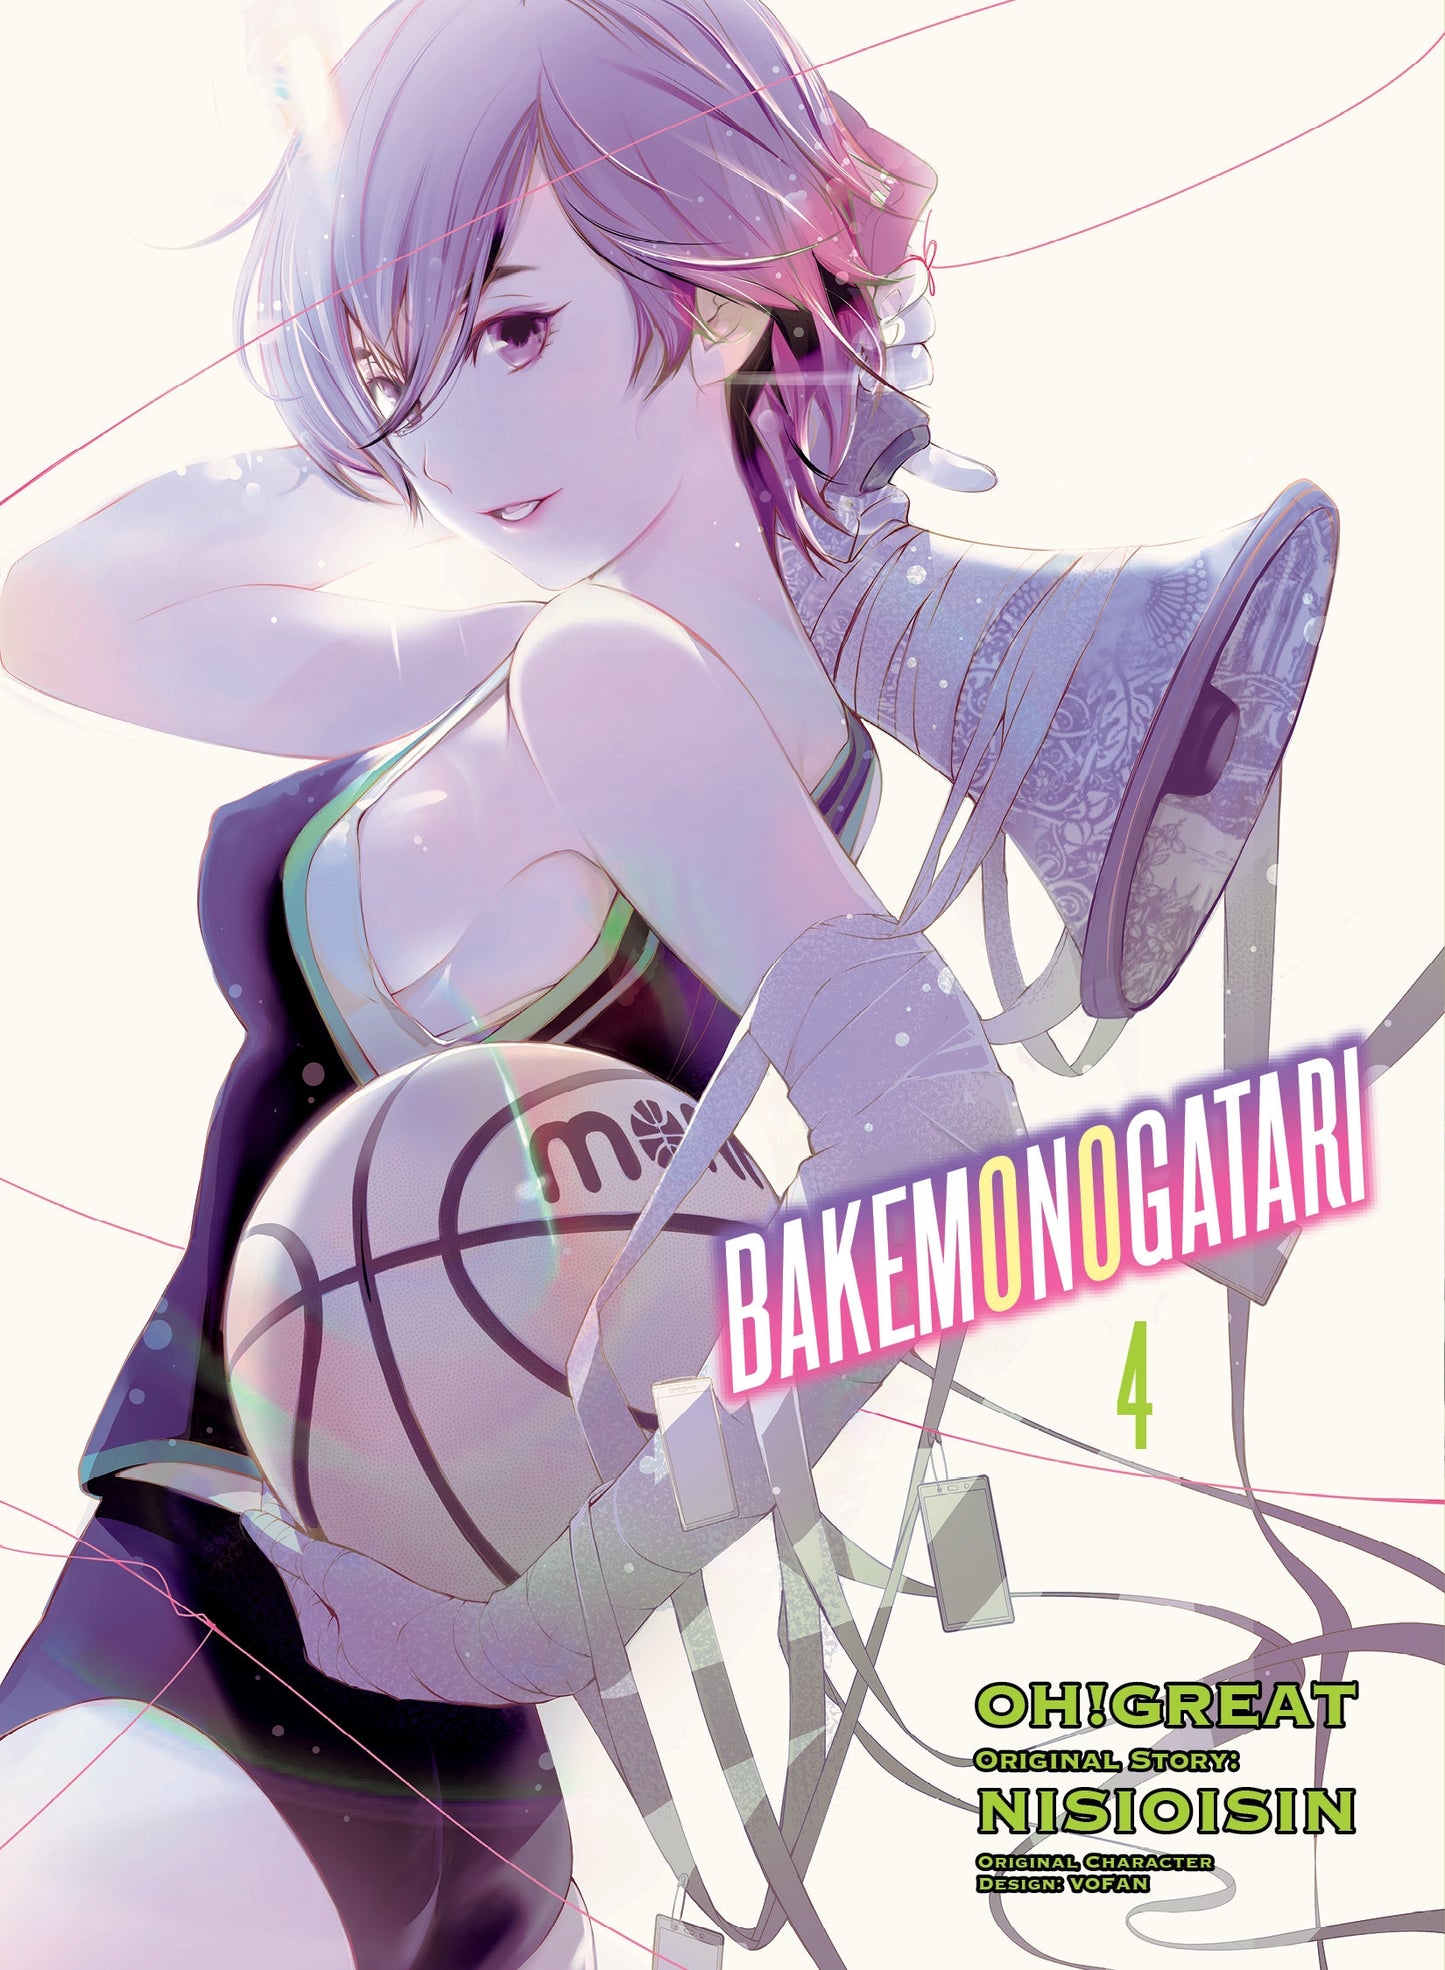 BAKEMONOGATARI (manga) 4 - Manga Warehouse